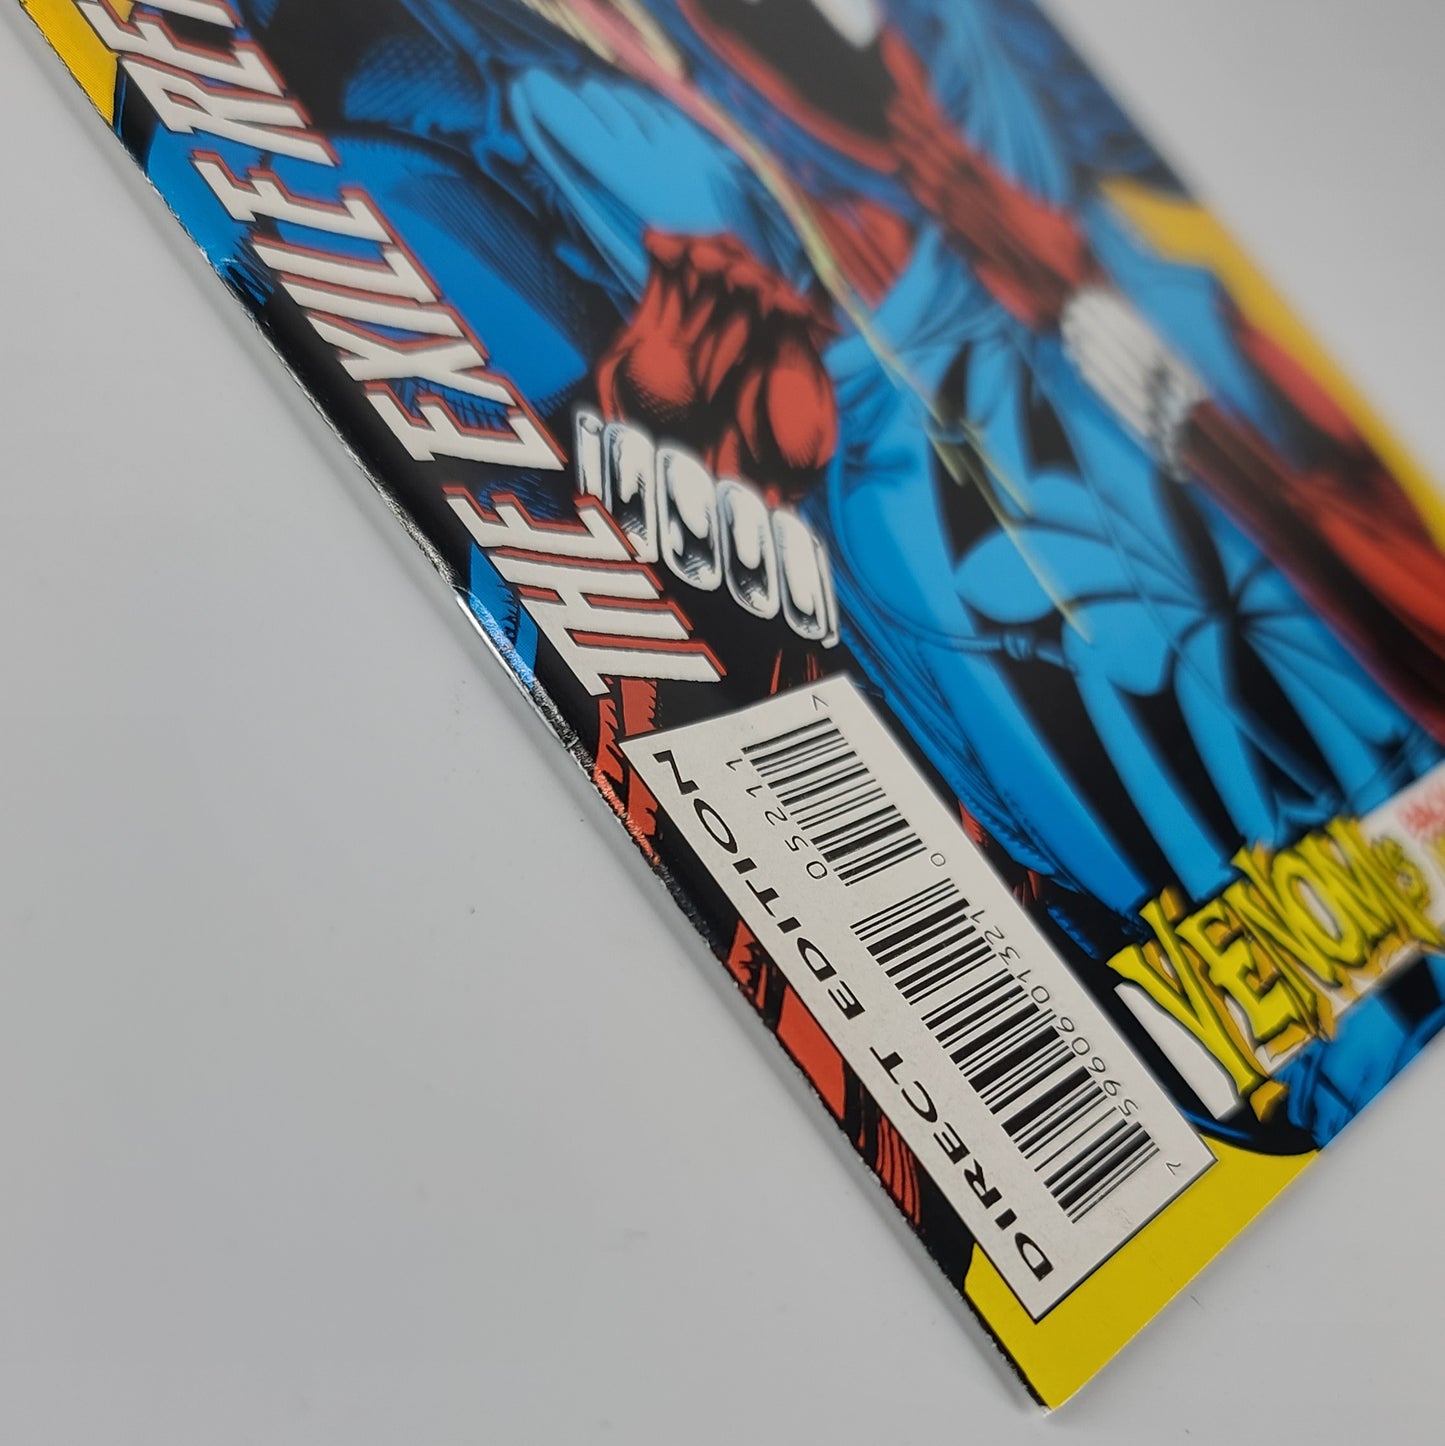 Spider-Man #52 (1994)